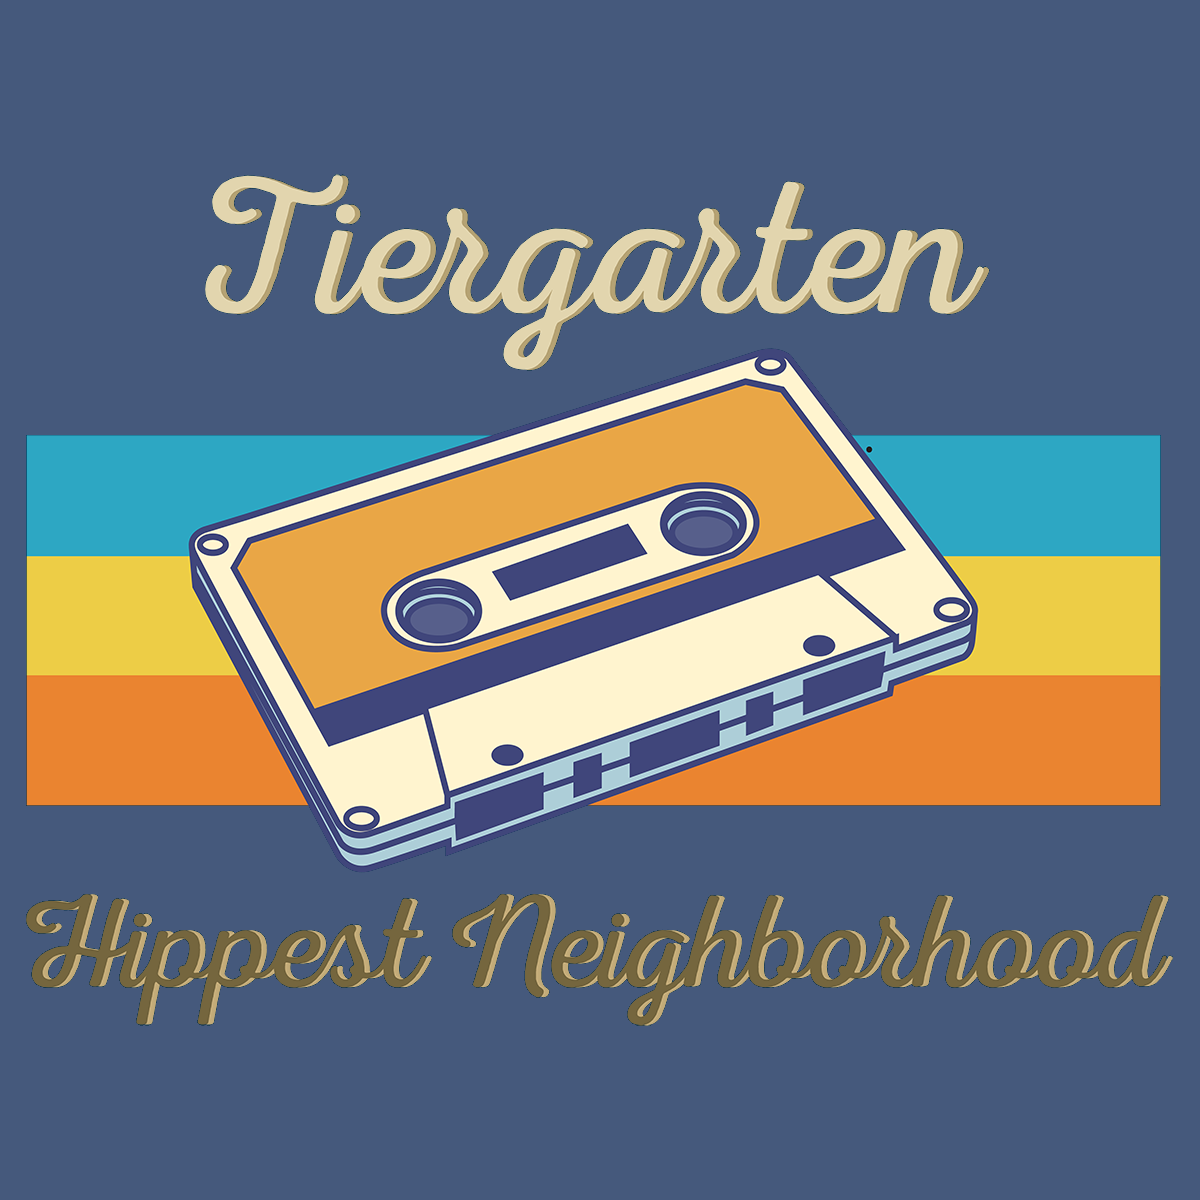 Tiergarten Hippest Neighborhood